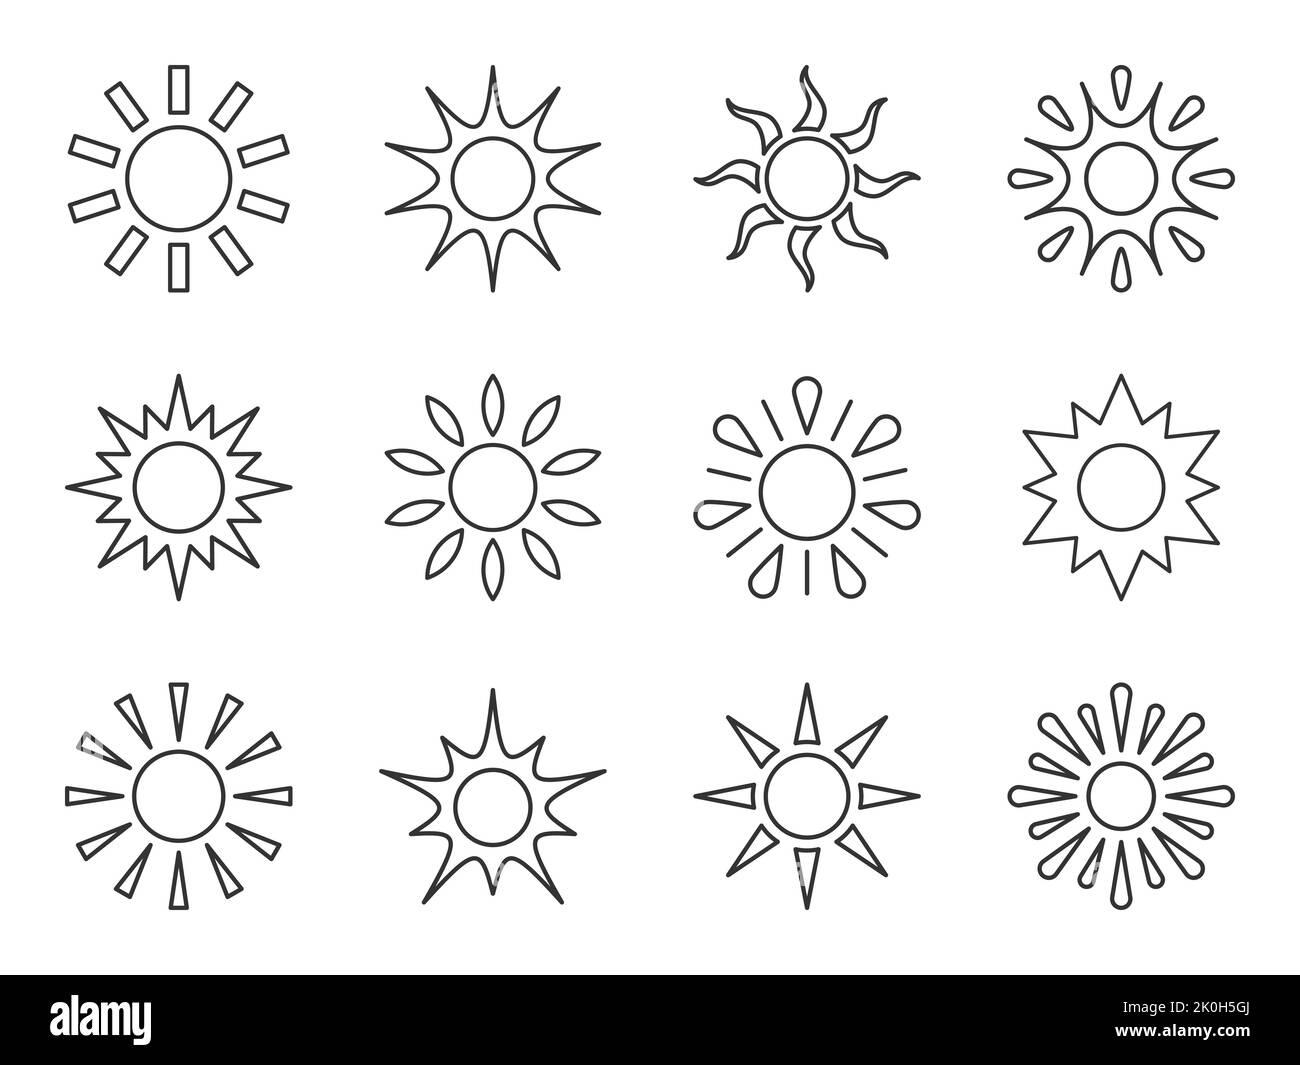 Symbol für die Sonnenlinie eingestellt. Verschiedene Form Sonnenstern. Cartoon Sommer Sonnenlicht Natur Himmel. Einfaches grafisches Sonnenkreiszeichen. Symbol für sonnige Wärmestrahlen der Wetter-App. Logo Sonnenaufgang Sonnenuntergang isoliert auf Weiß. Stock Vektor